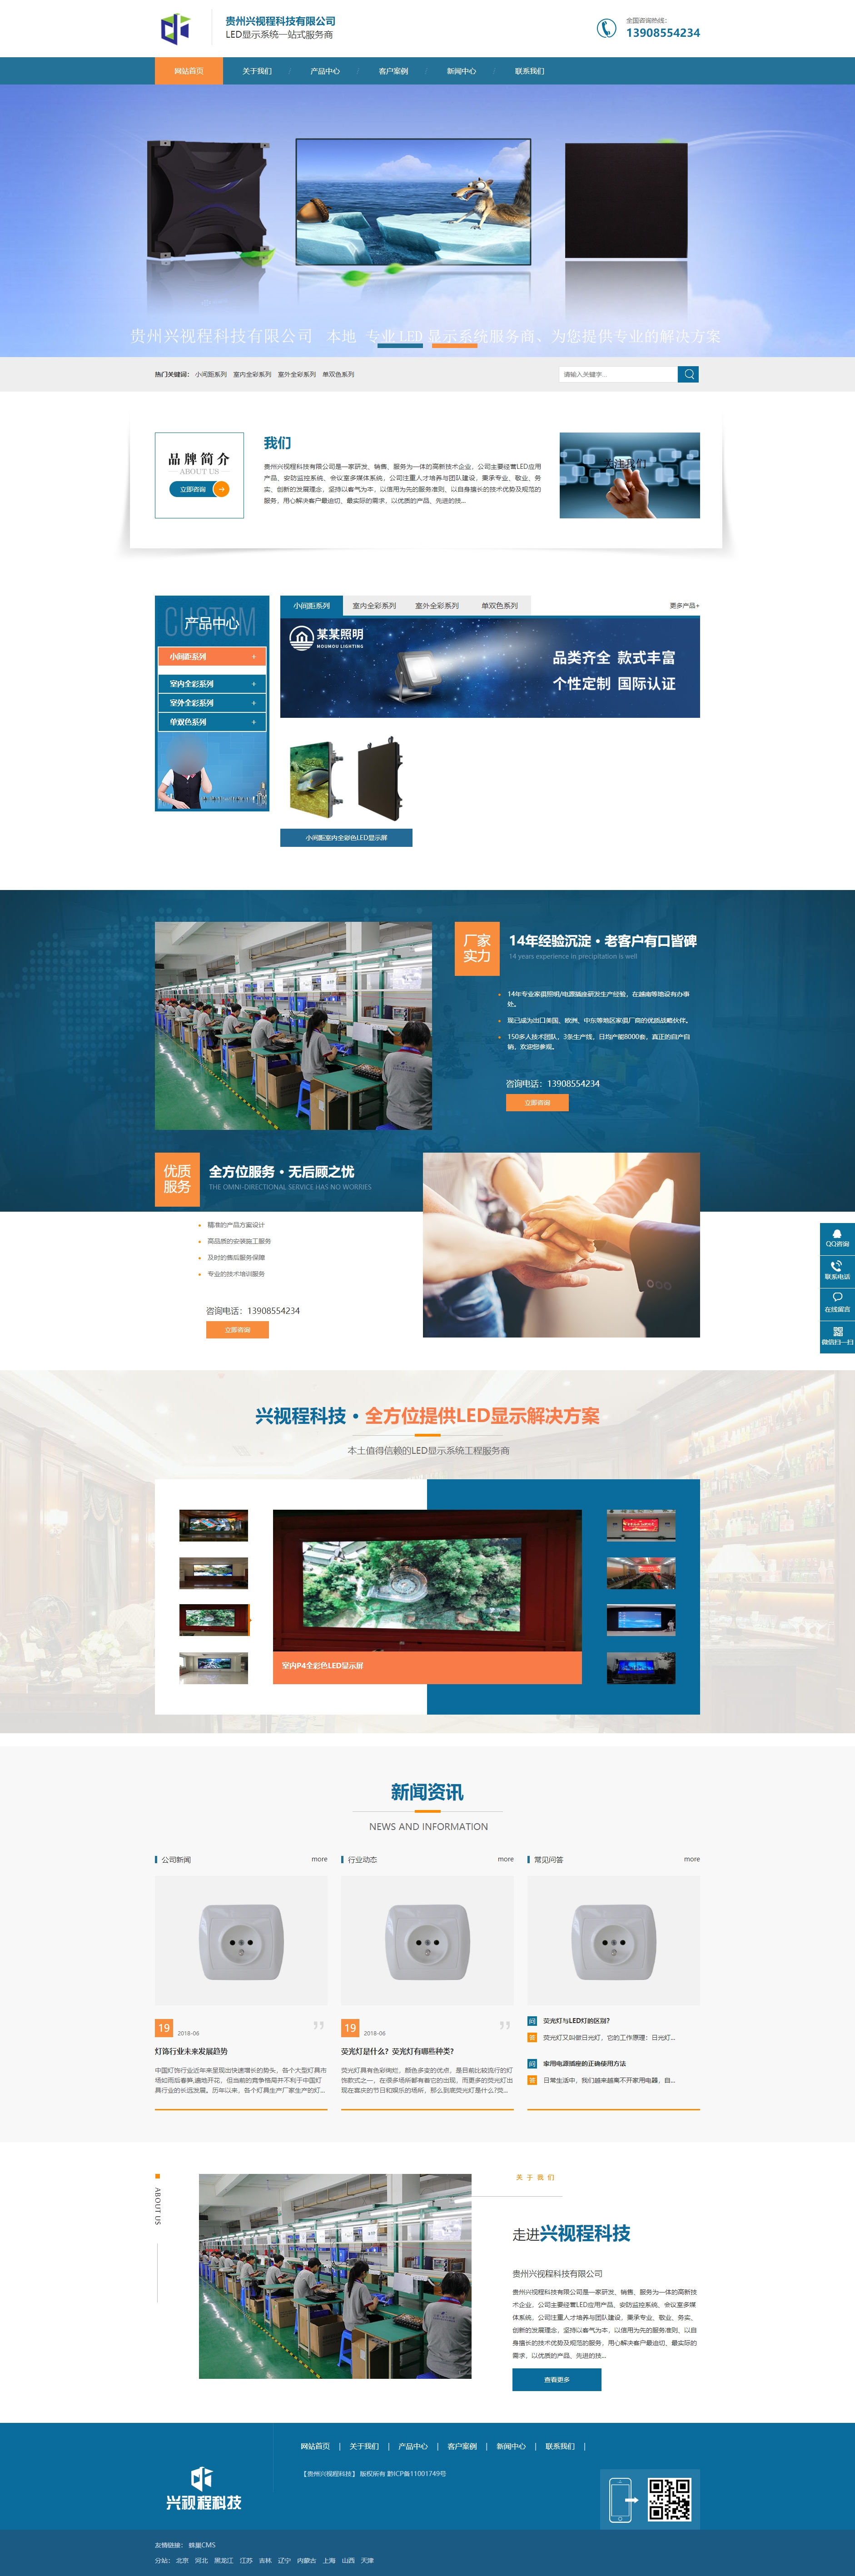 玉屏贵州兴视程科技有限公司 网站正式上线